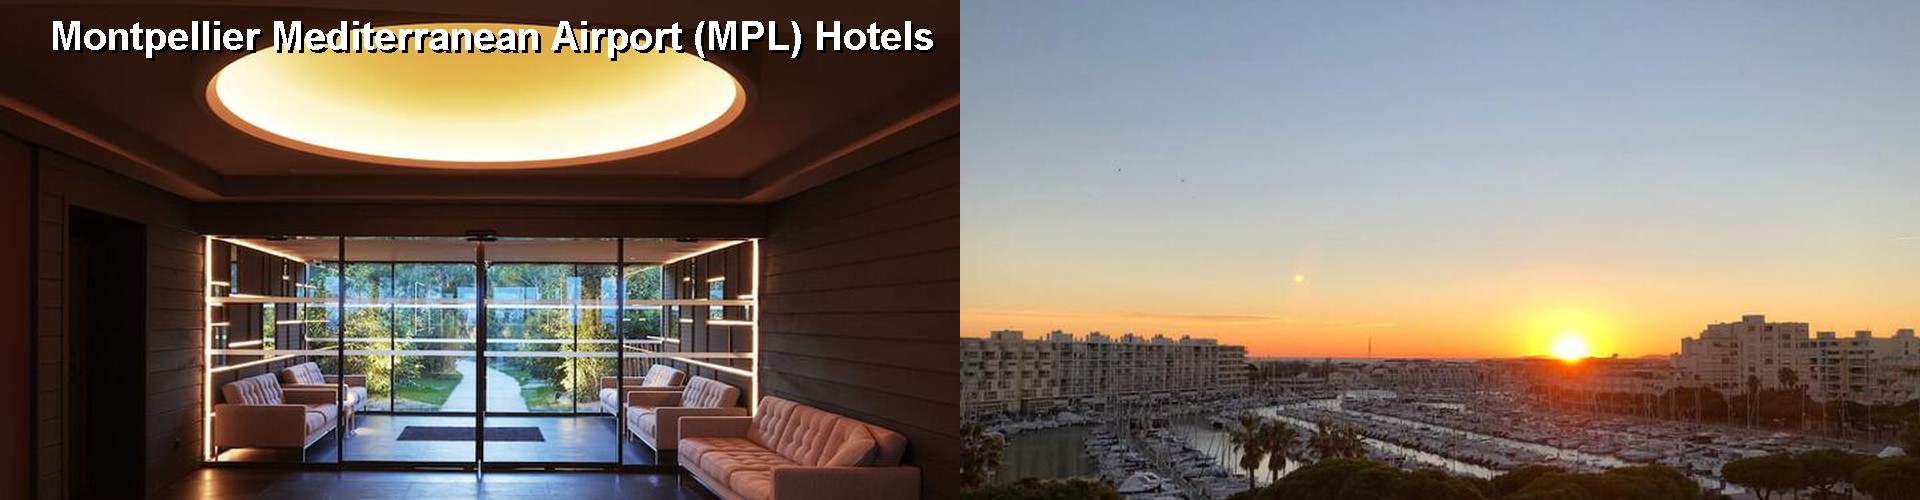 3 Best Hotels near Montpellier Mediterranean Airport (MPL)